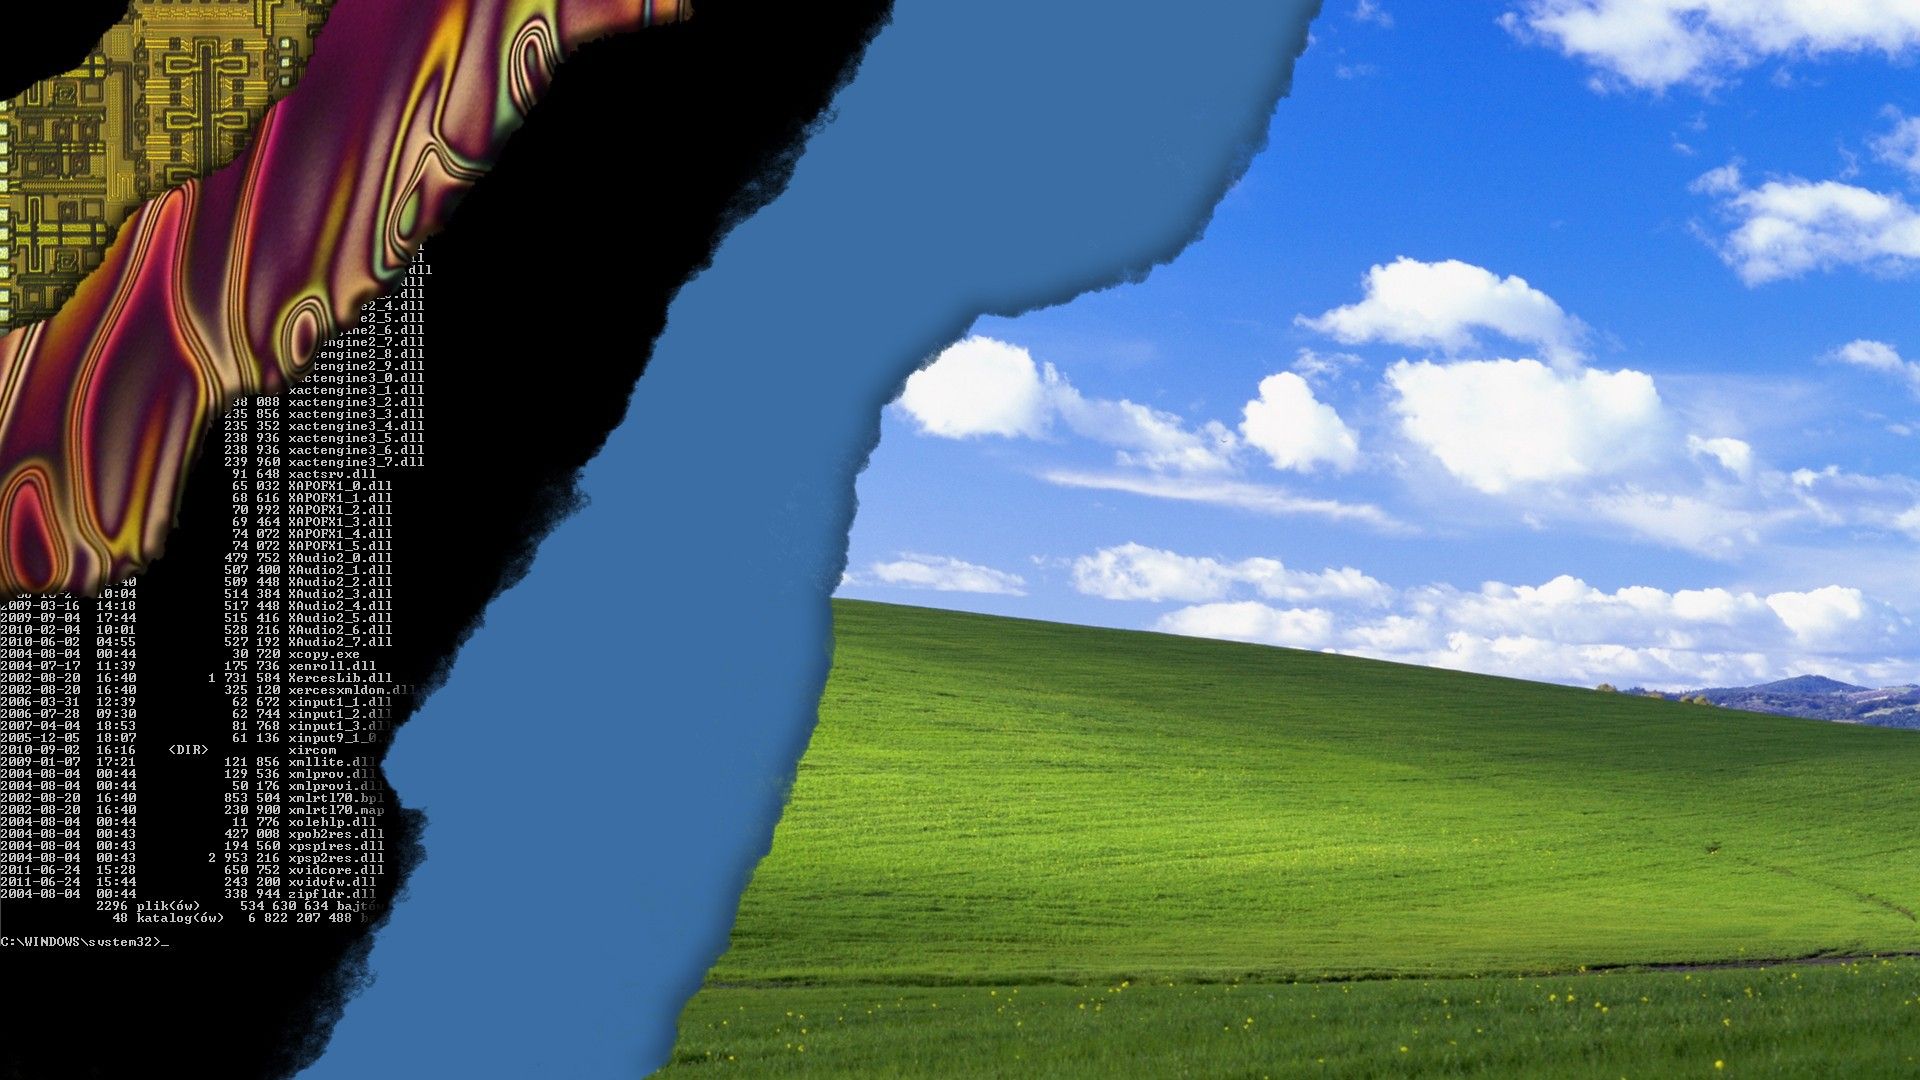 Layers Windows XP Desktop Desktop wallpaper 1600x900